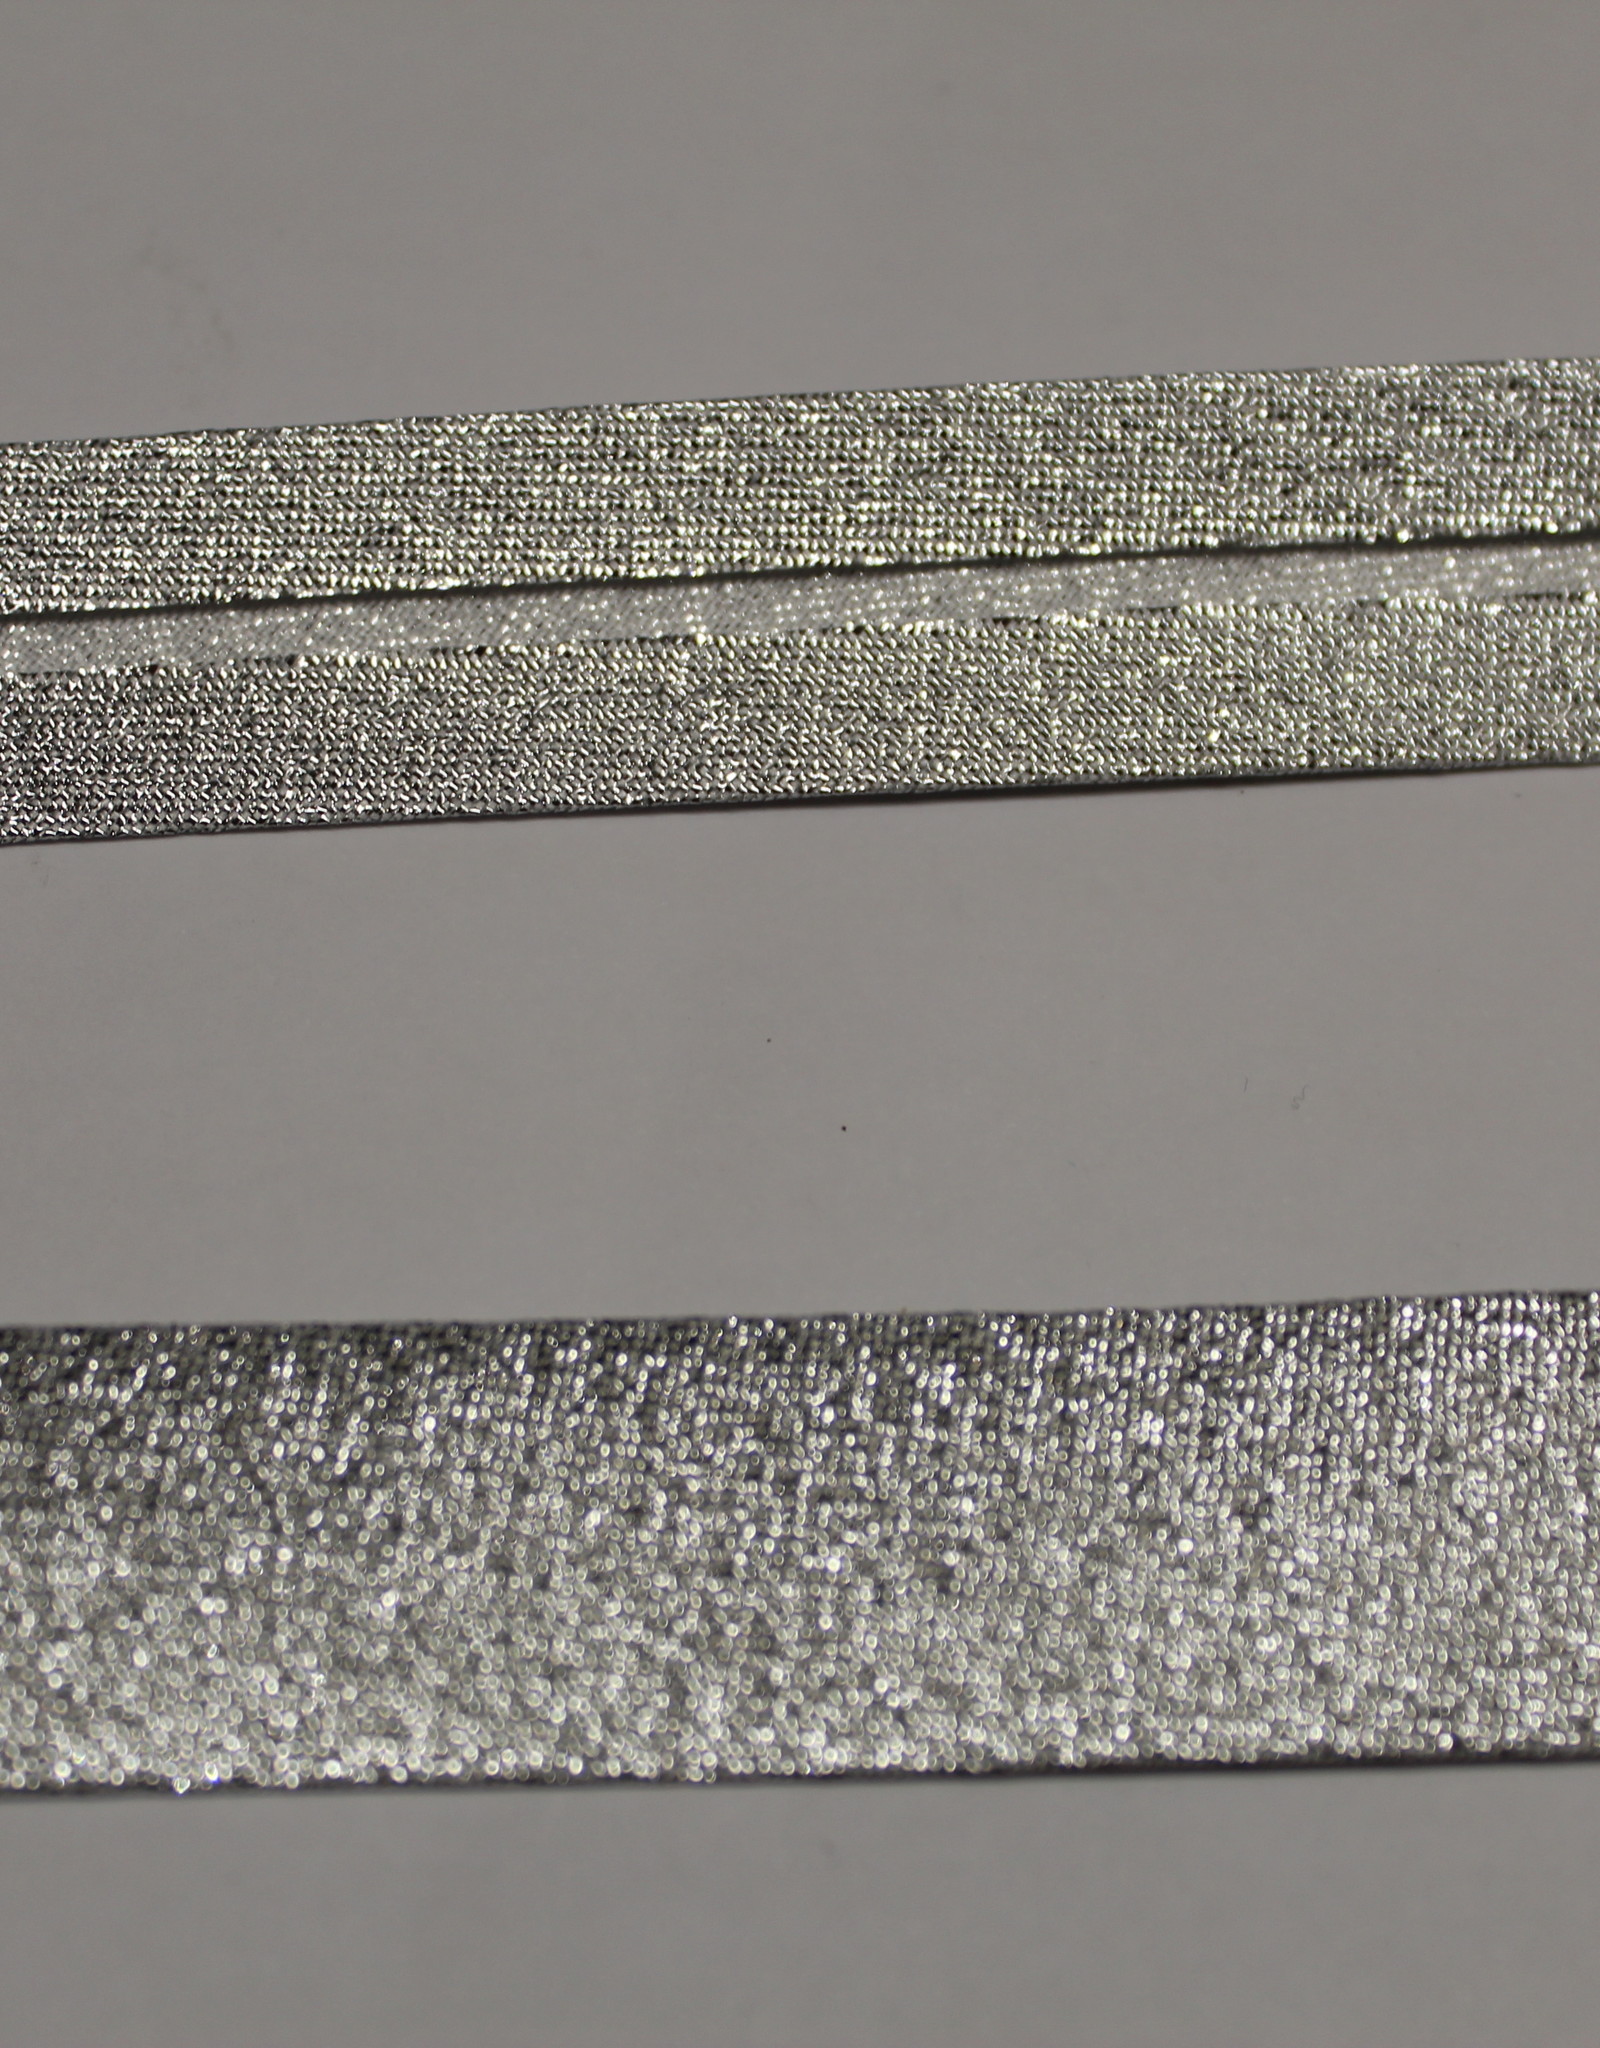 Biais metallic glitter 18mm op rol zilver